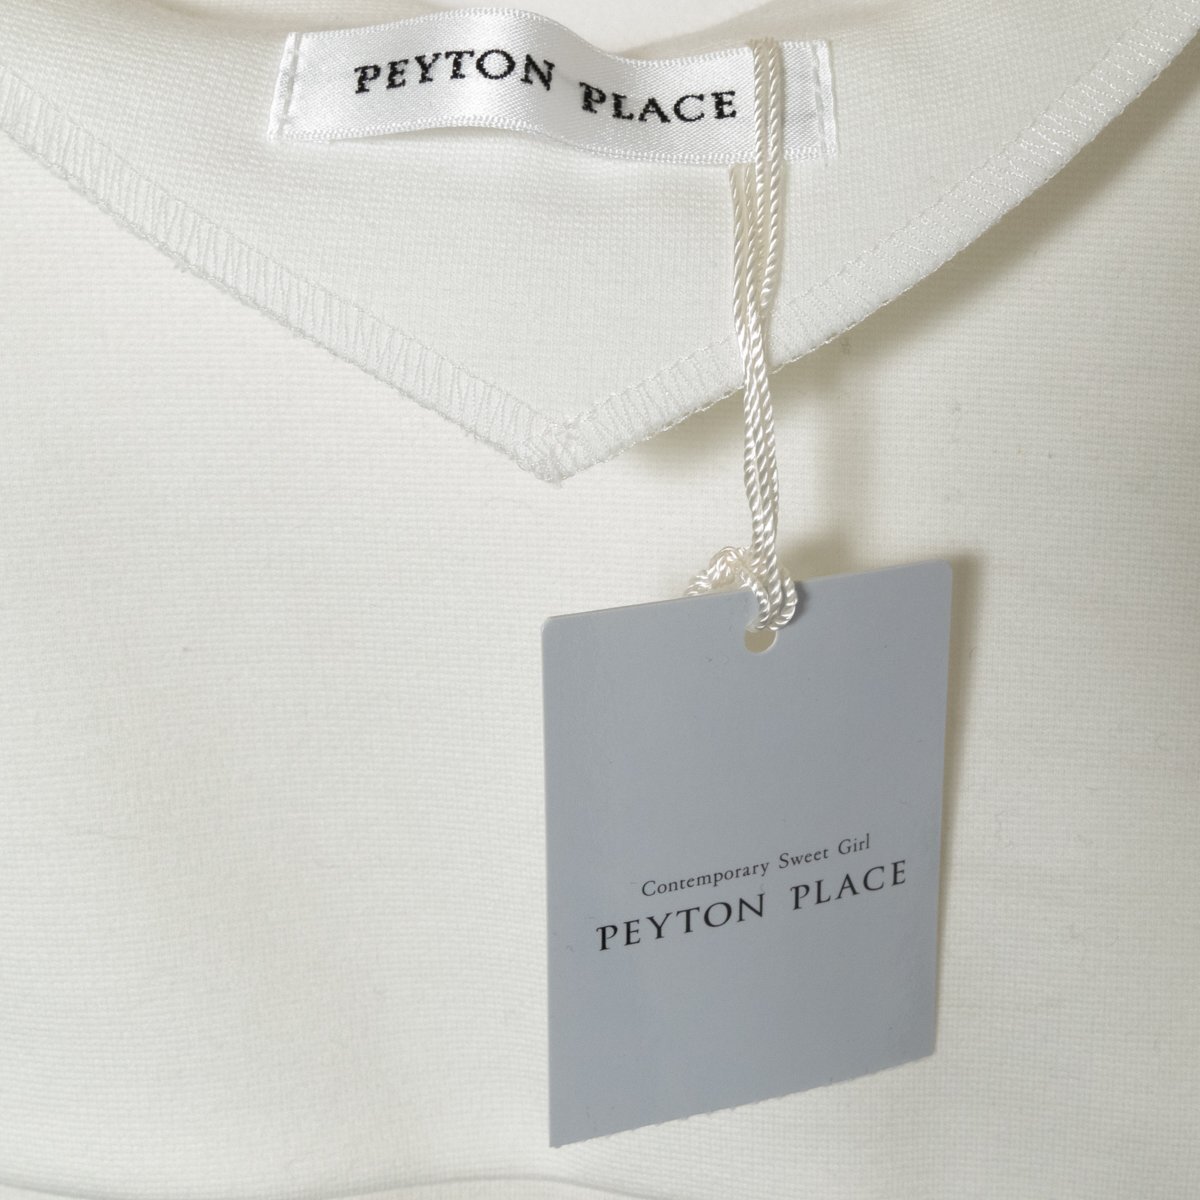  с биркой PEYTON PLACE Payton Place окантовка рисунок One-piece боковой лента гонки 13 хлопок хлопок белый femi человек casual 